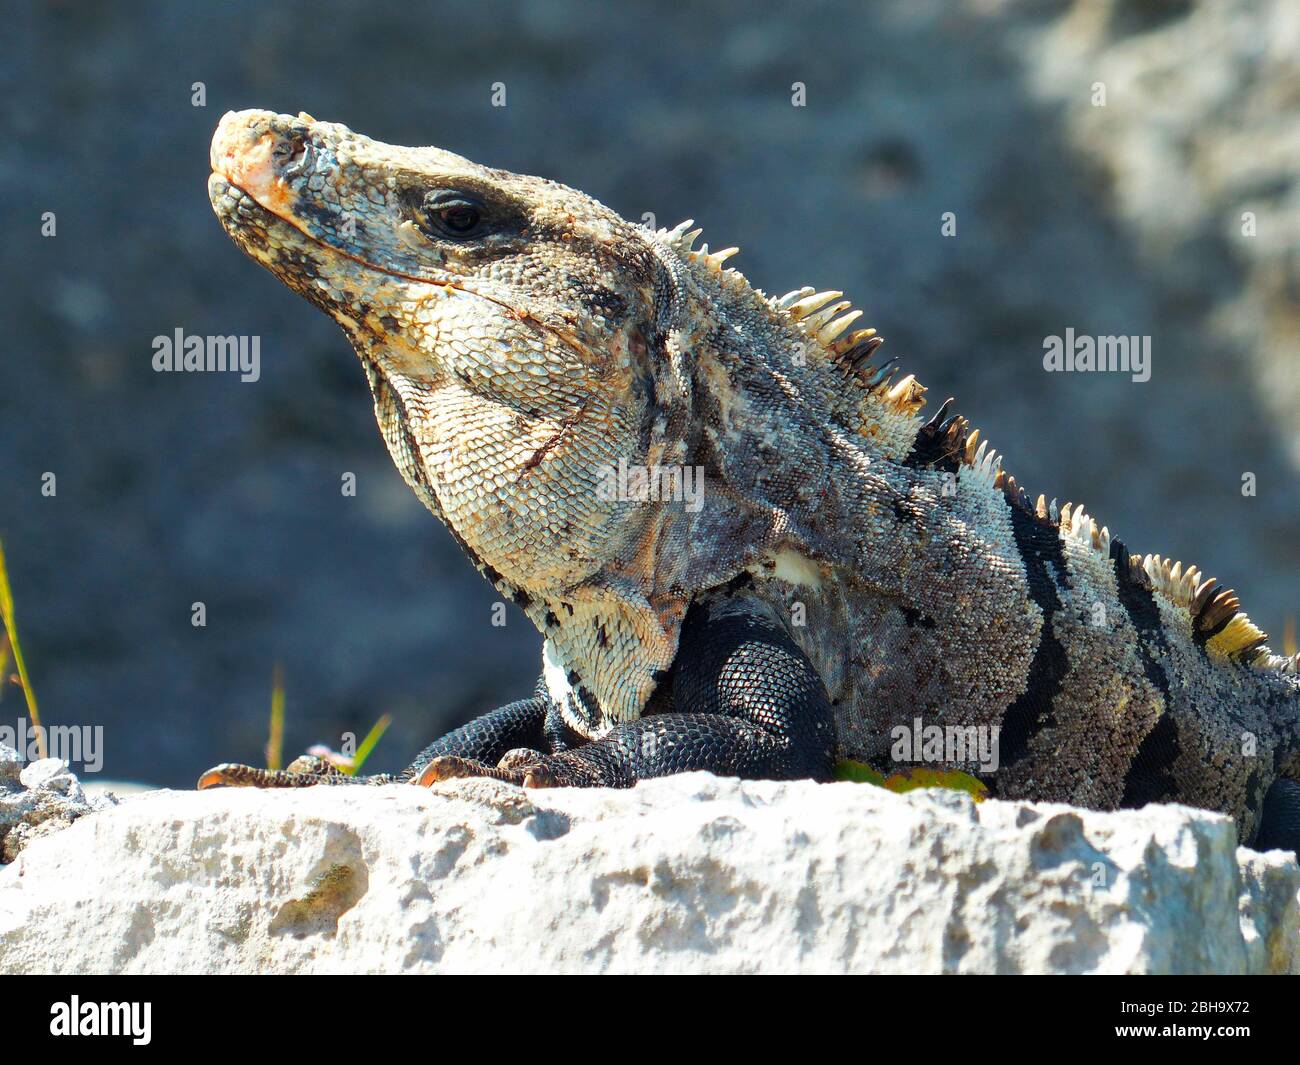 Ctenoaura similis, communément appelé iguana à queue épineuse noire, iguana noire ou ctenosaure noire, est un lézard originaire du Mexique et de l'Amérique centrale qui a été introduit en Floride Banque D'Images